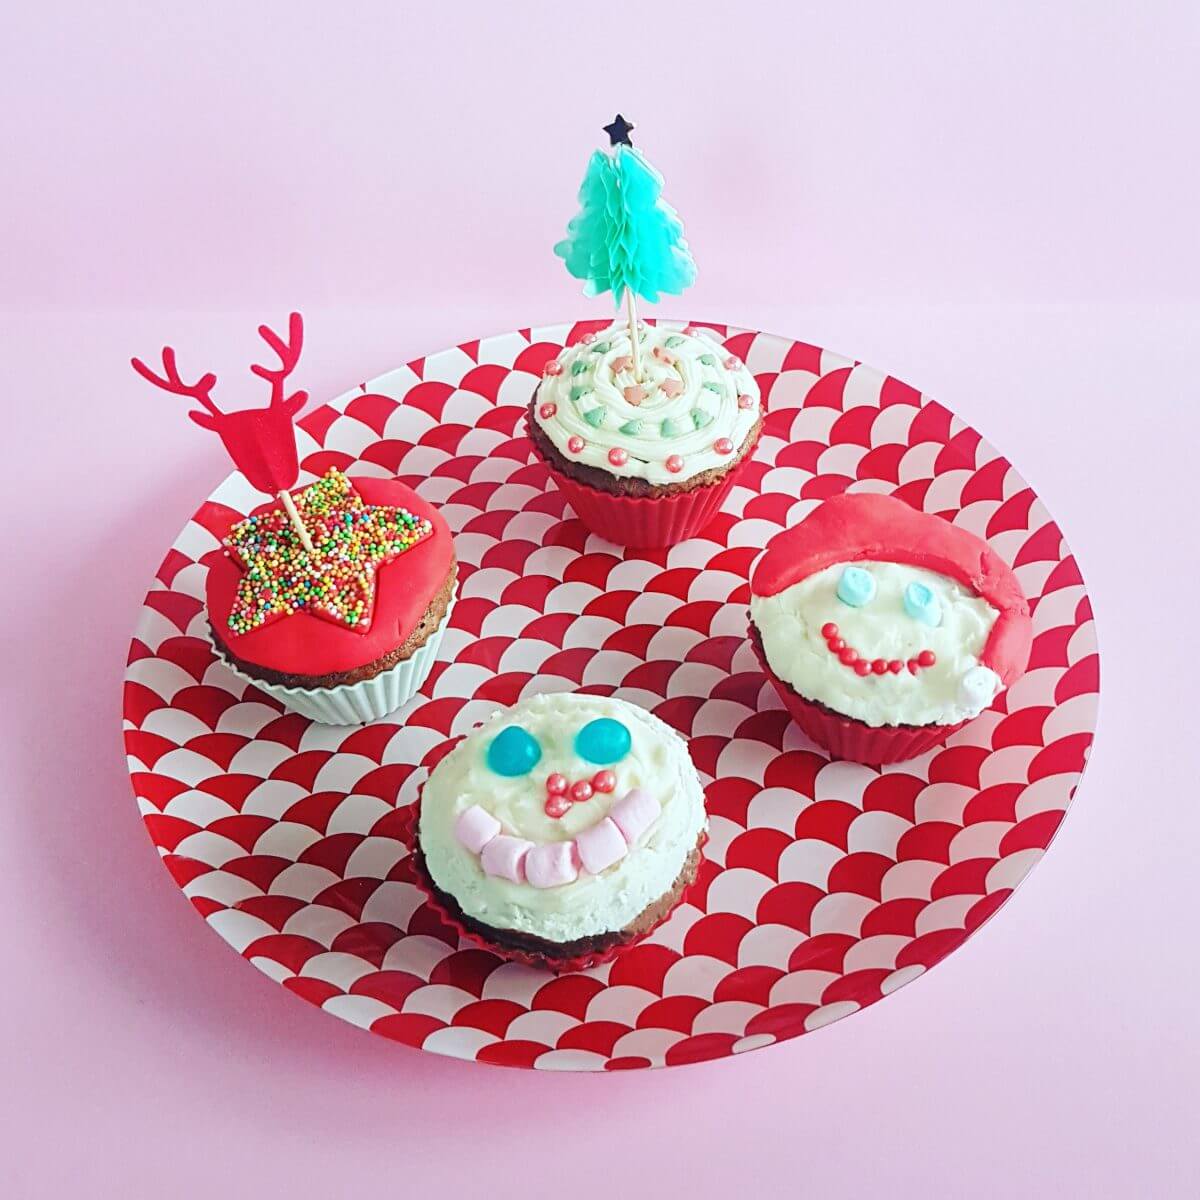 cupcakes versieren voor kerst